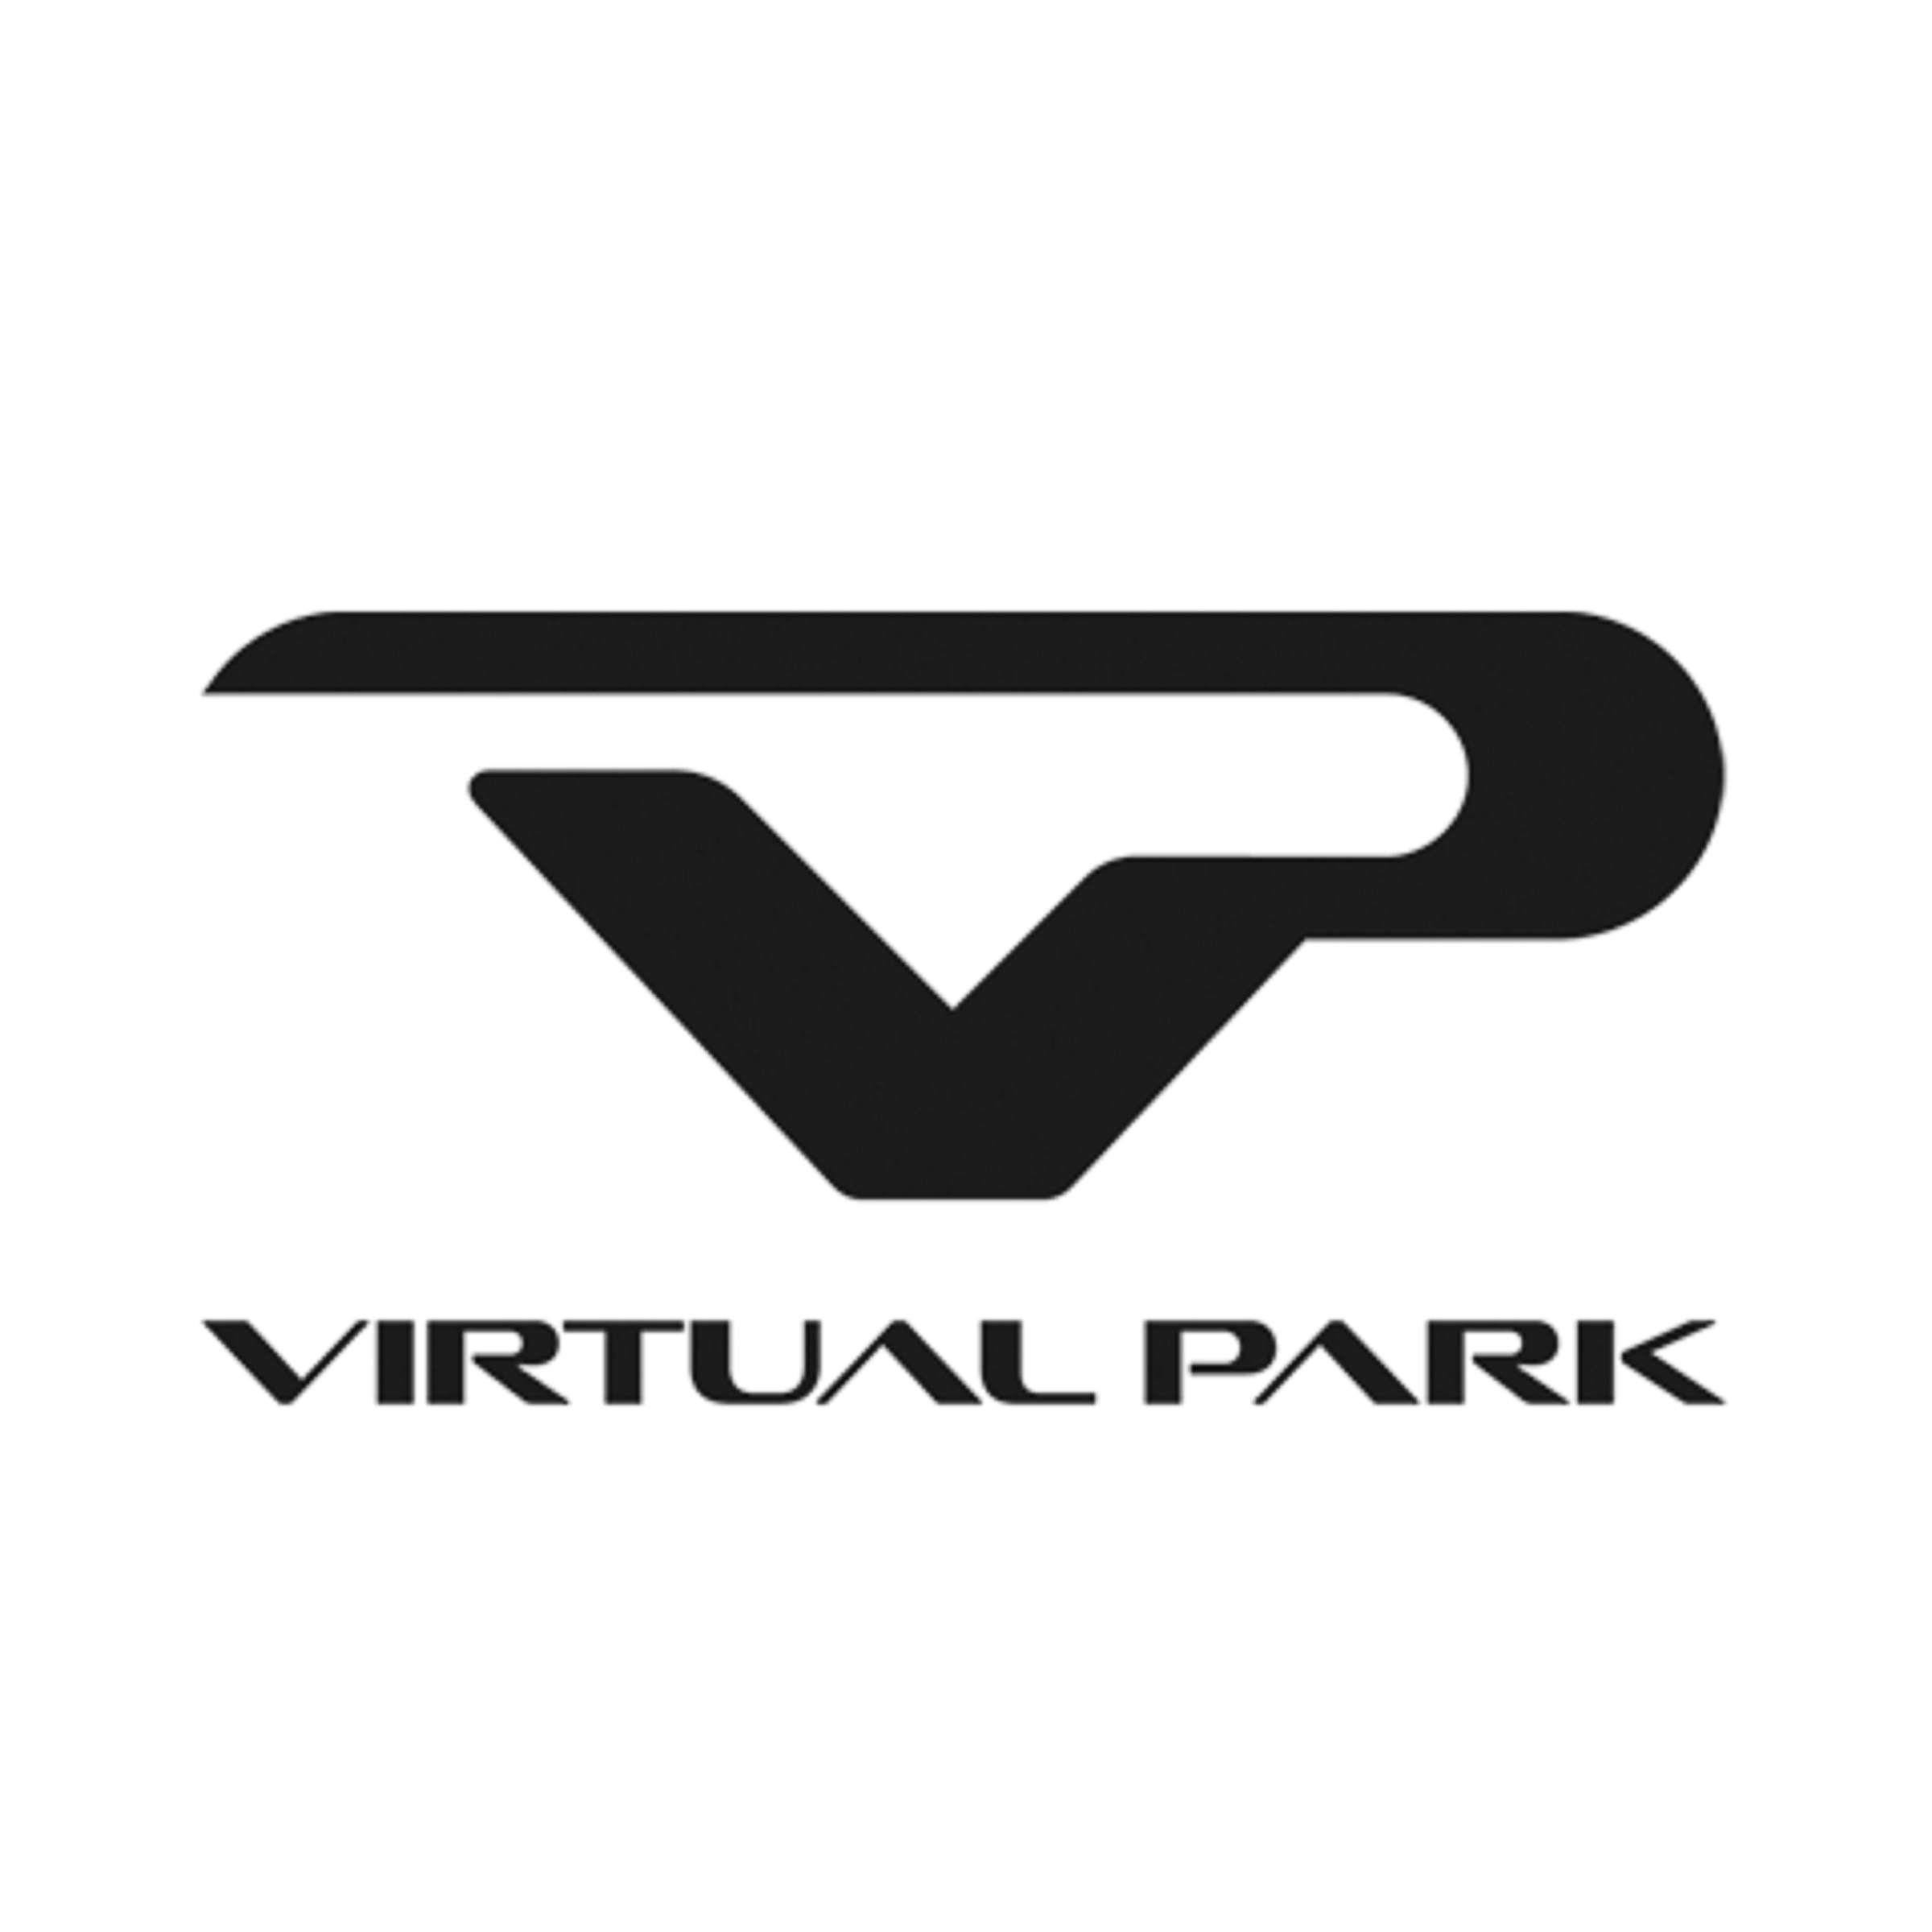 Le logo de Virtual Park, inspiré du USS enterprise et d'un casque de réalité virtuelle, le logo reprends la phrase célèbre "Where no man has gone before"